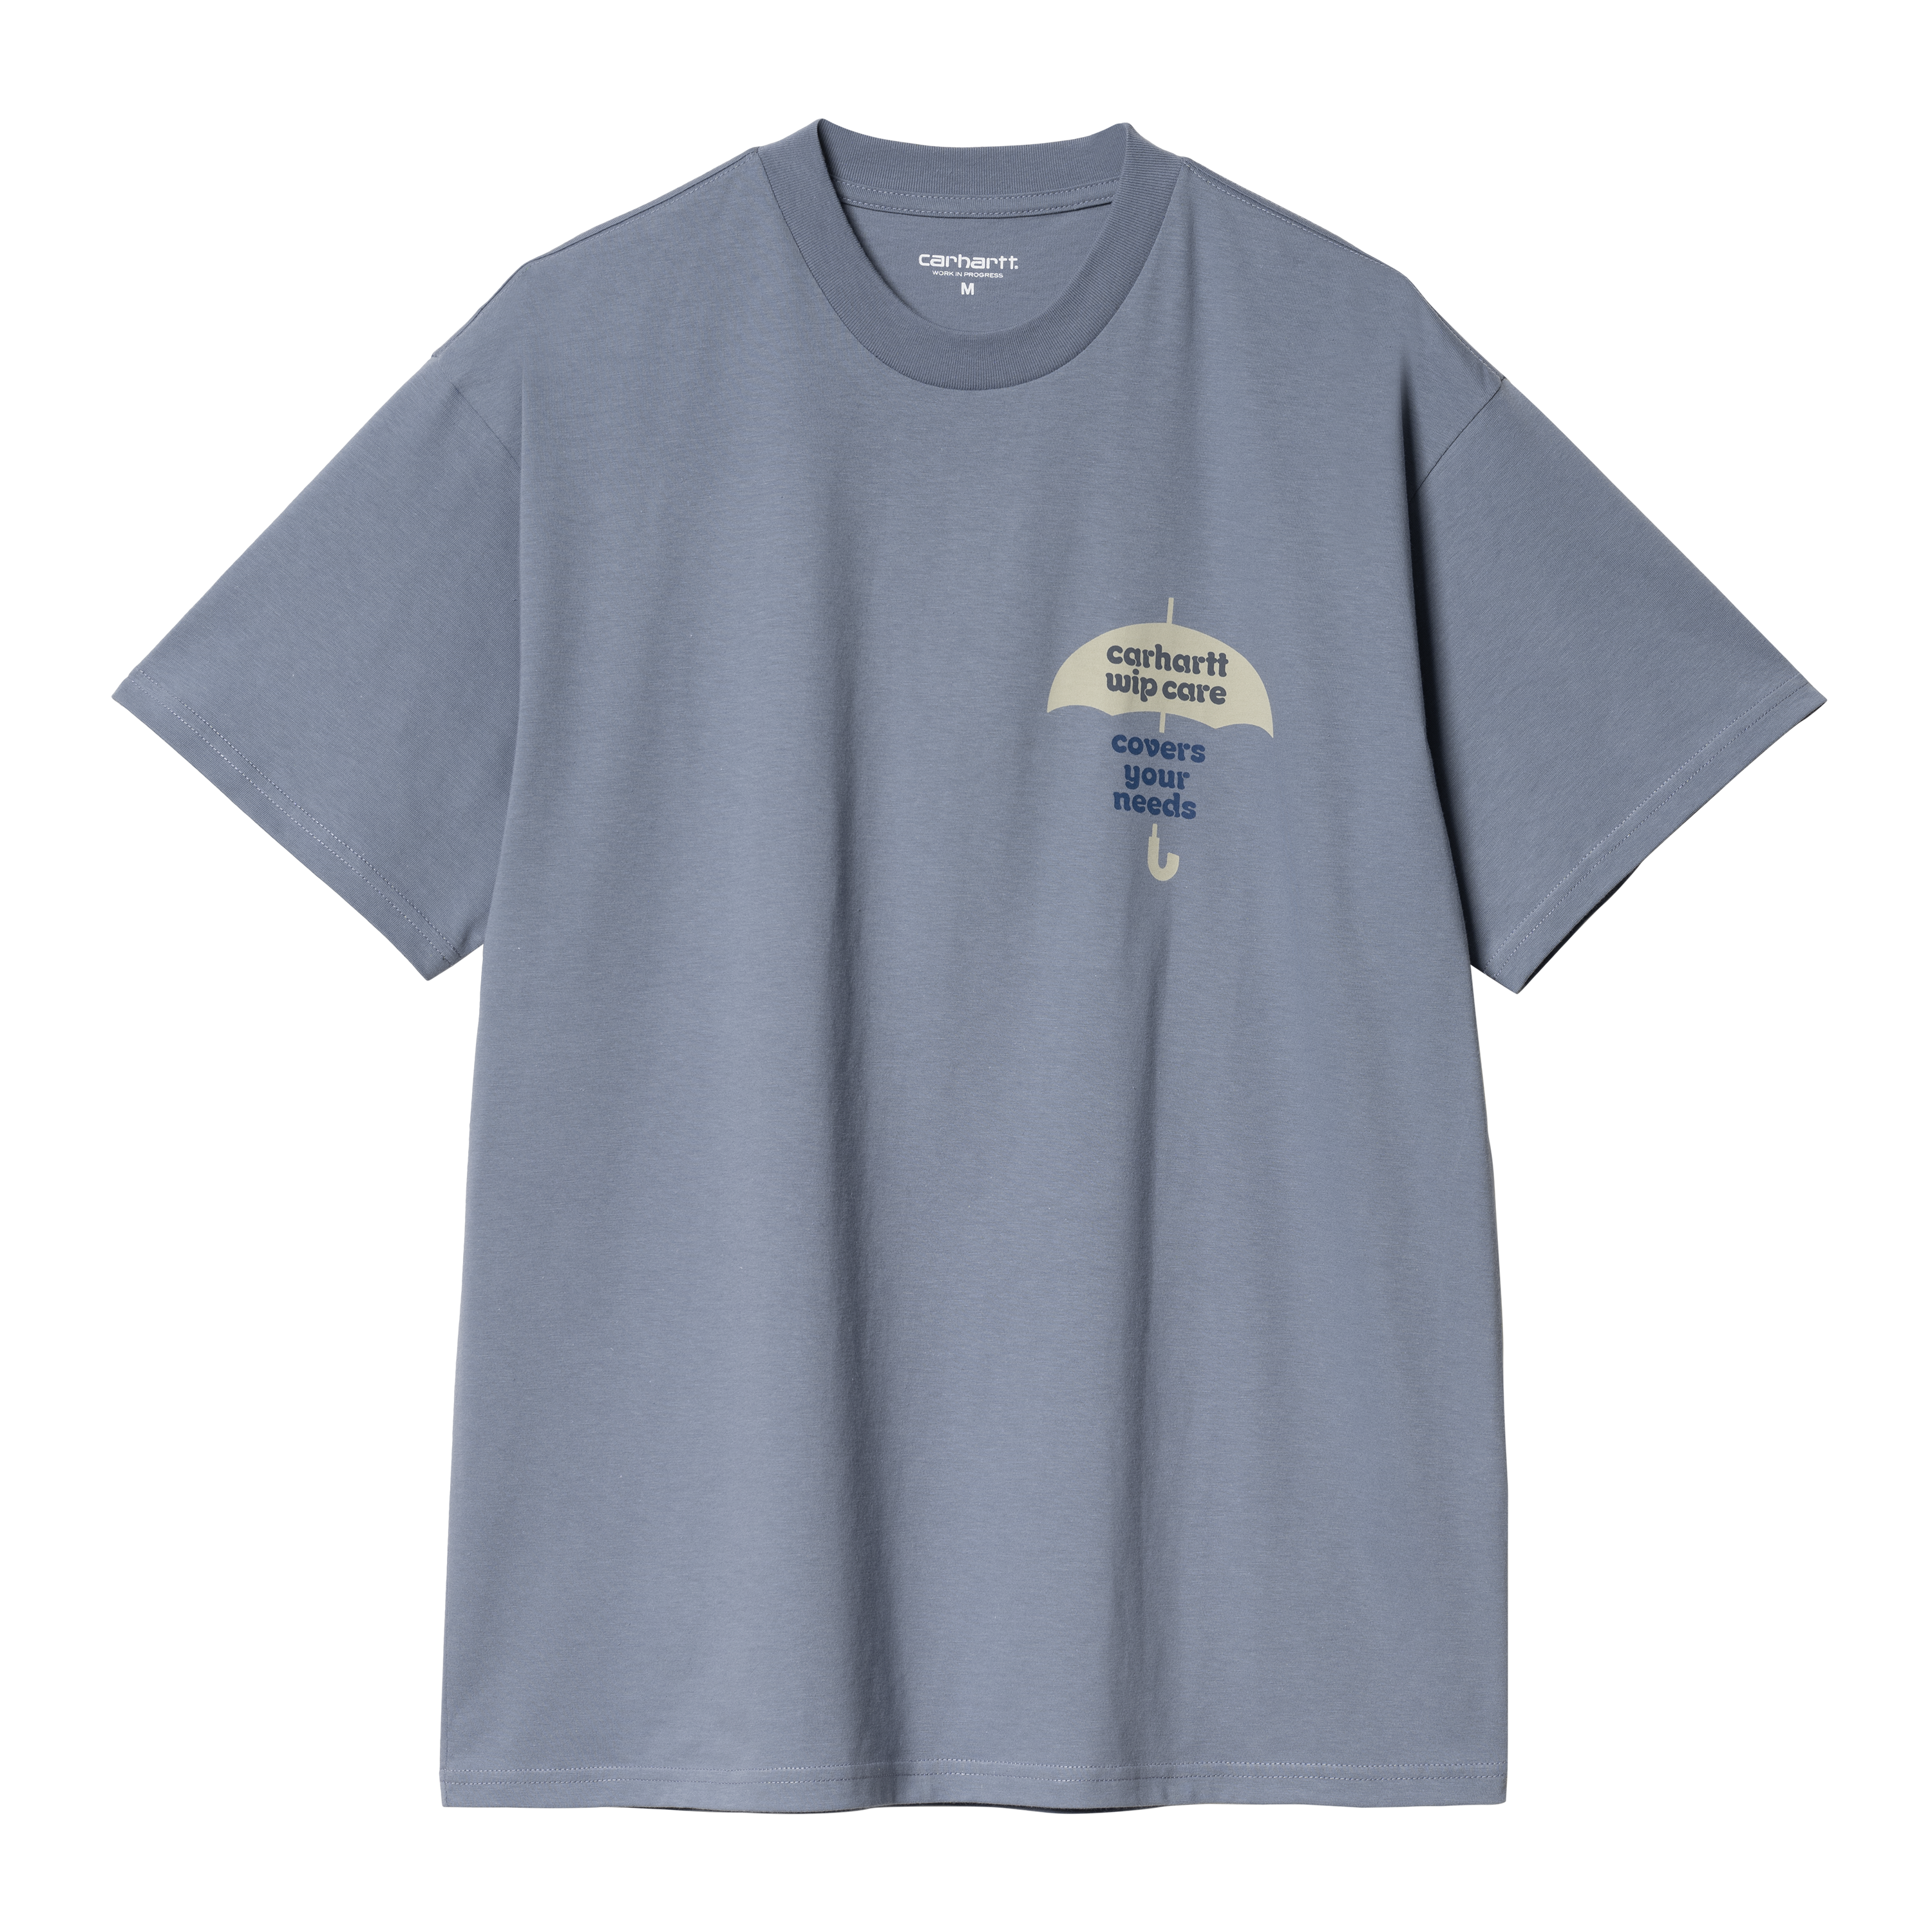 Carhartt WIP Short Sleeve Covers T-Shirt Bleu